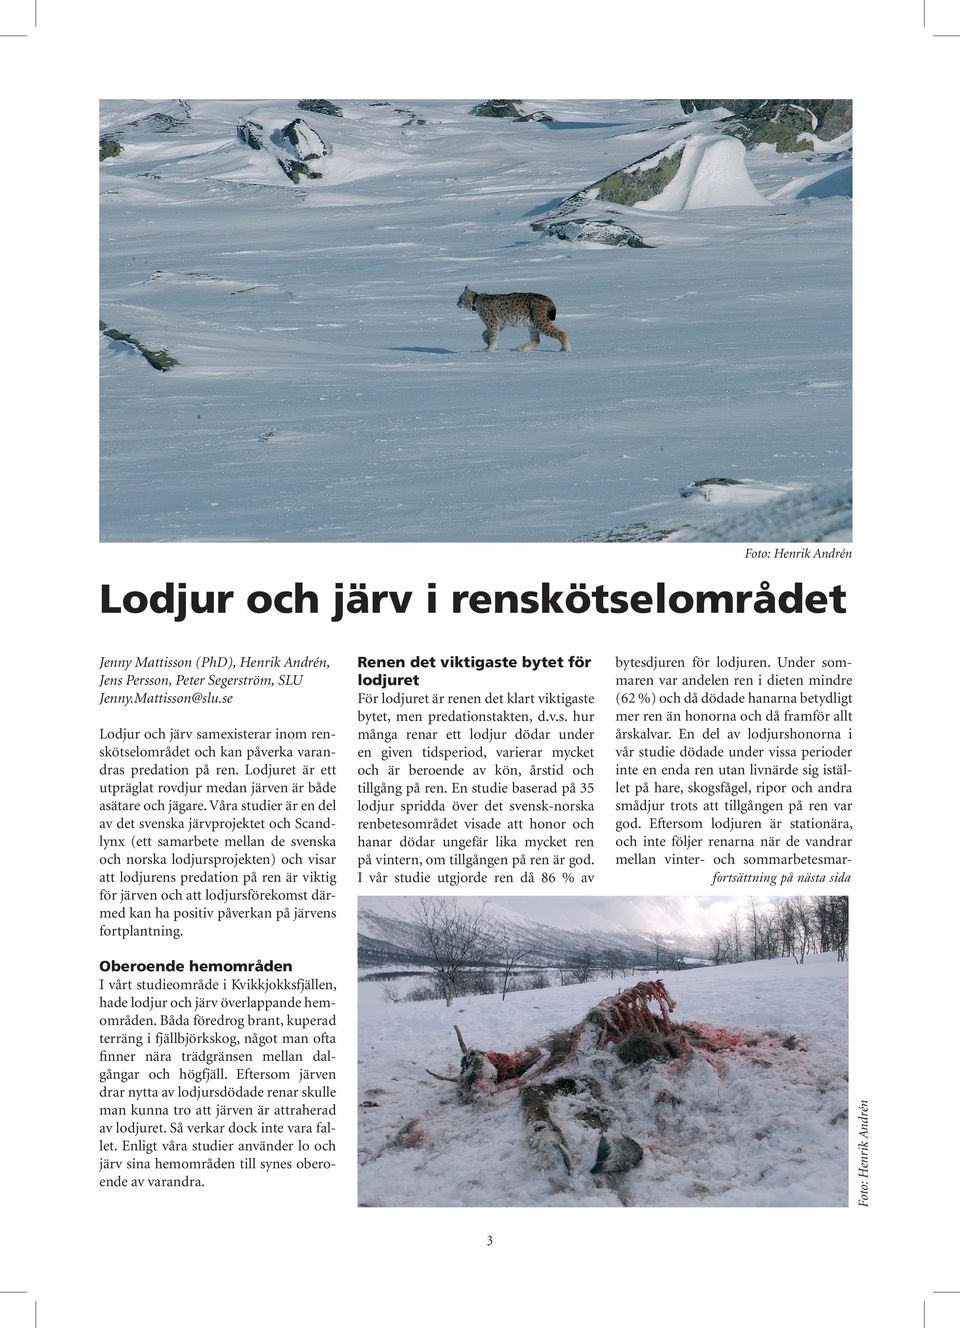 Våra studier är en del av det svenska järvprojektet och Scandlynx (ett samarbete mellan de svenska och norska lodjursprojekten) och visar att lodjurens predation på ren är viktig för järven och att